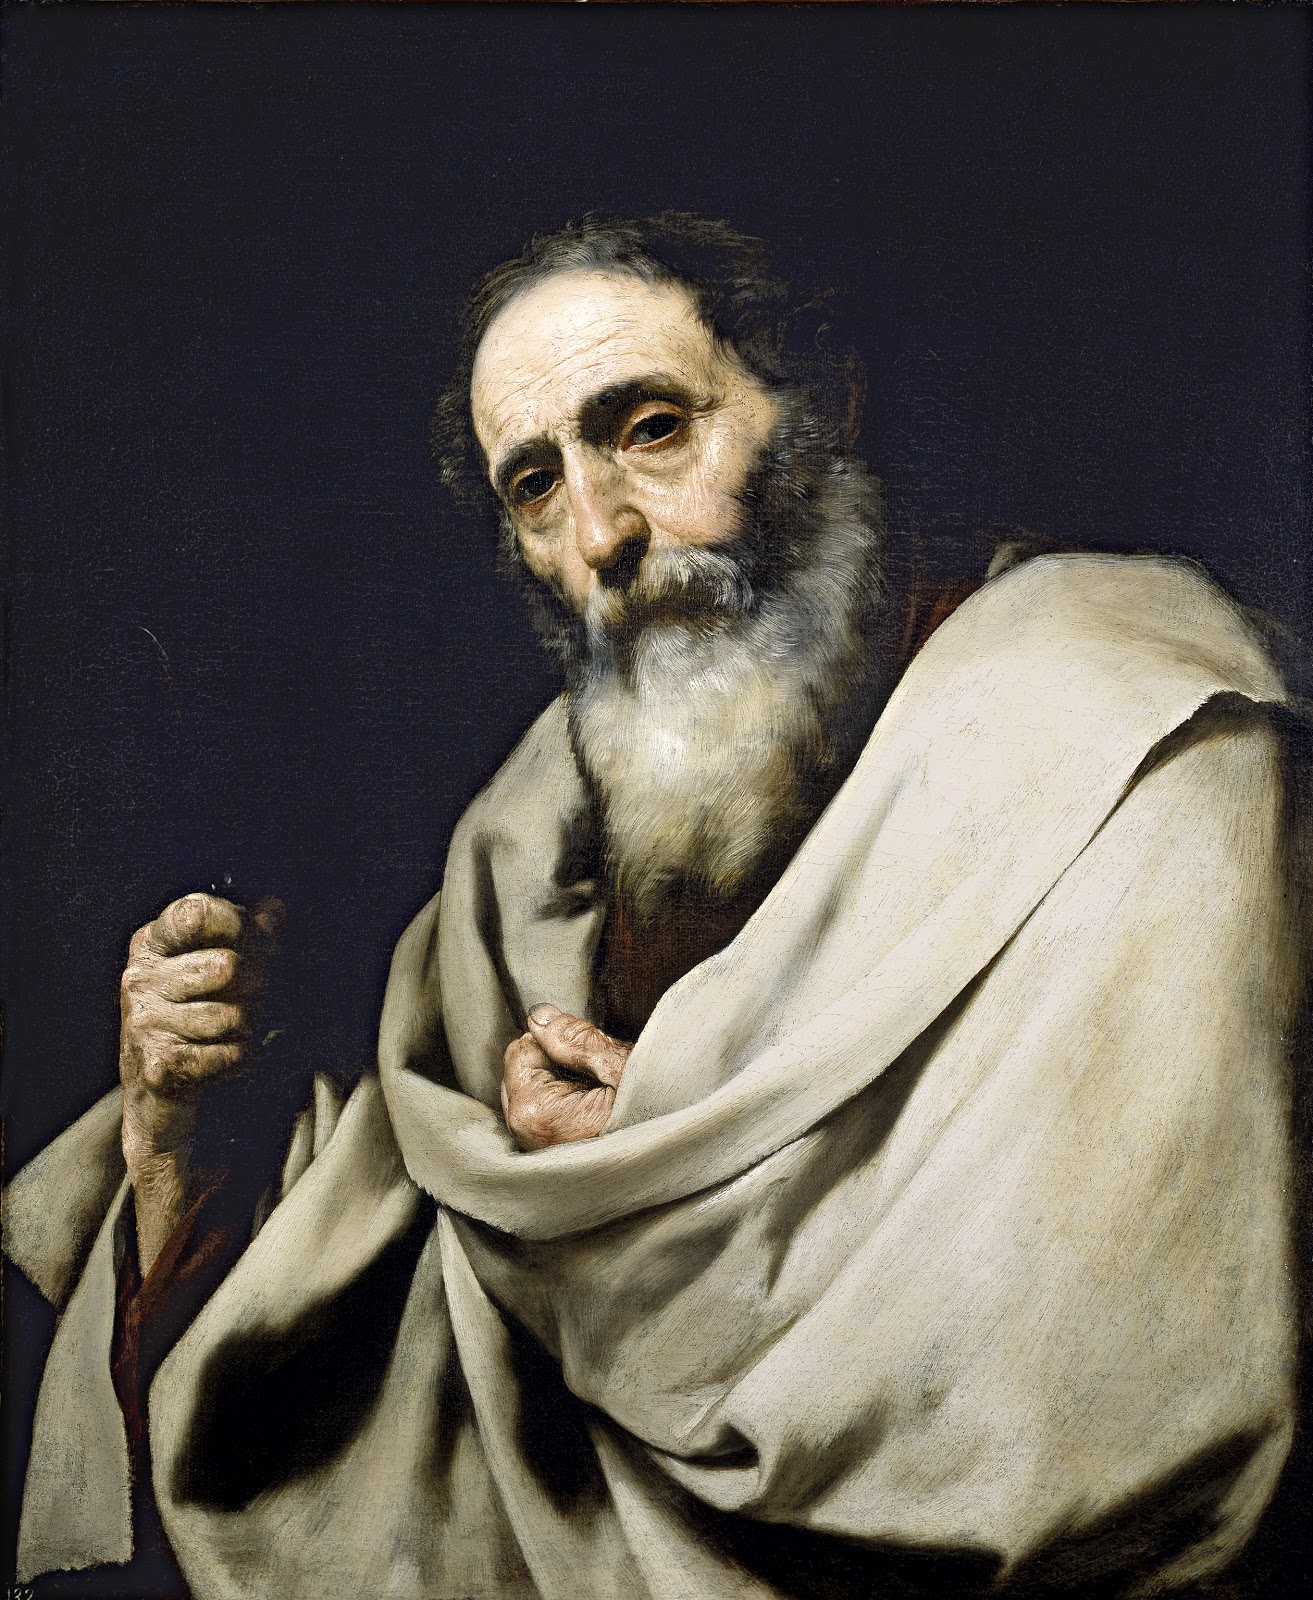 Jusepe+de+Ribera-1591-1652 (45).jpg